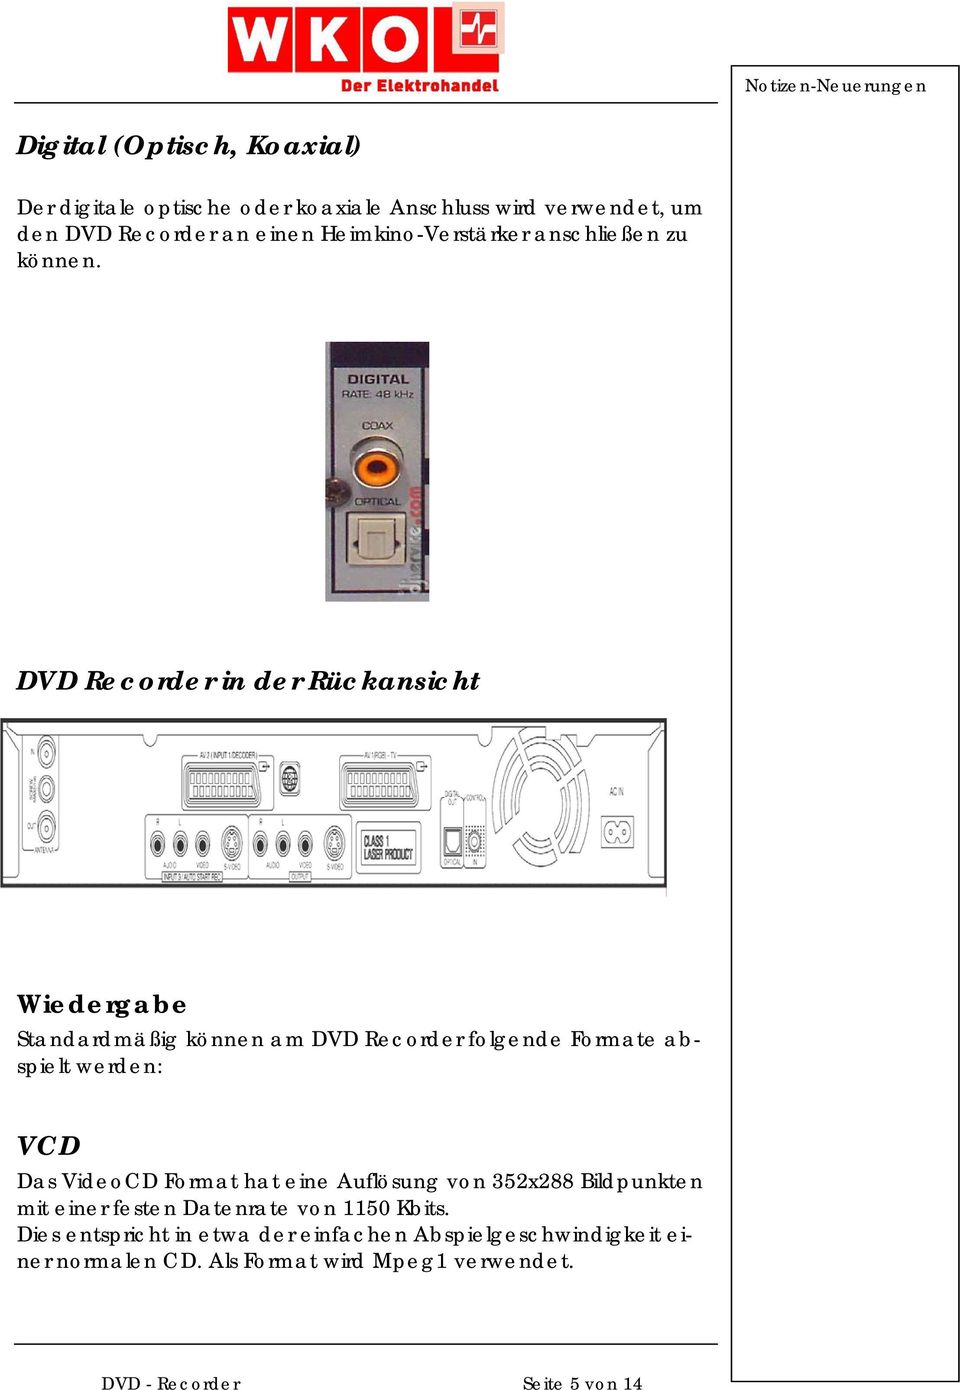 DVD Recorder in der Rückansicht Wiedergabe Standardmäßig können am DVD Recorder folgende Formate abspielt werden: VCD Das VideoCD